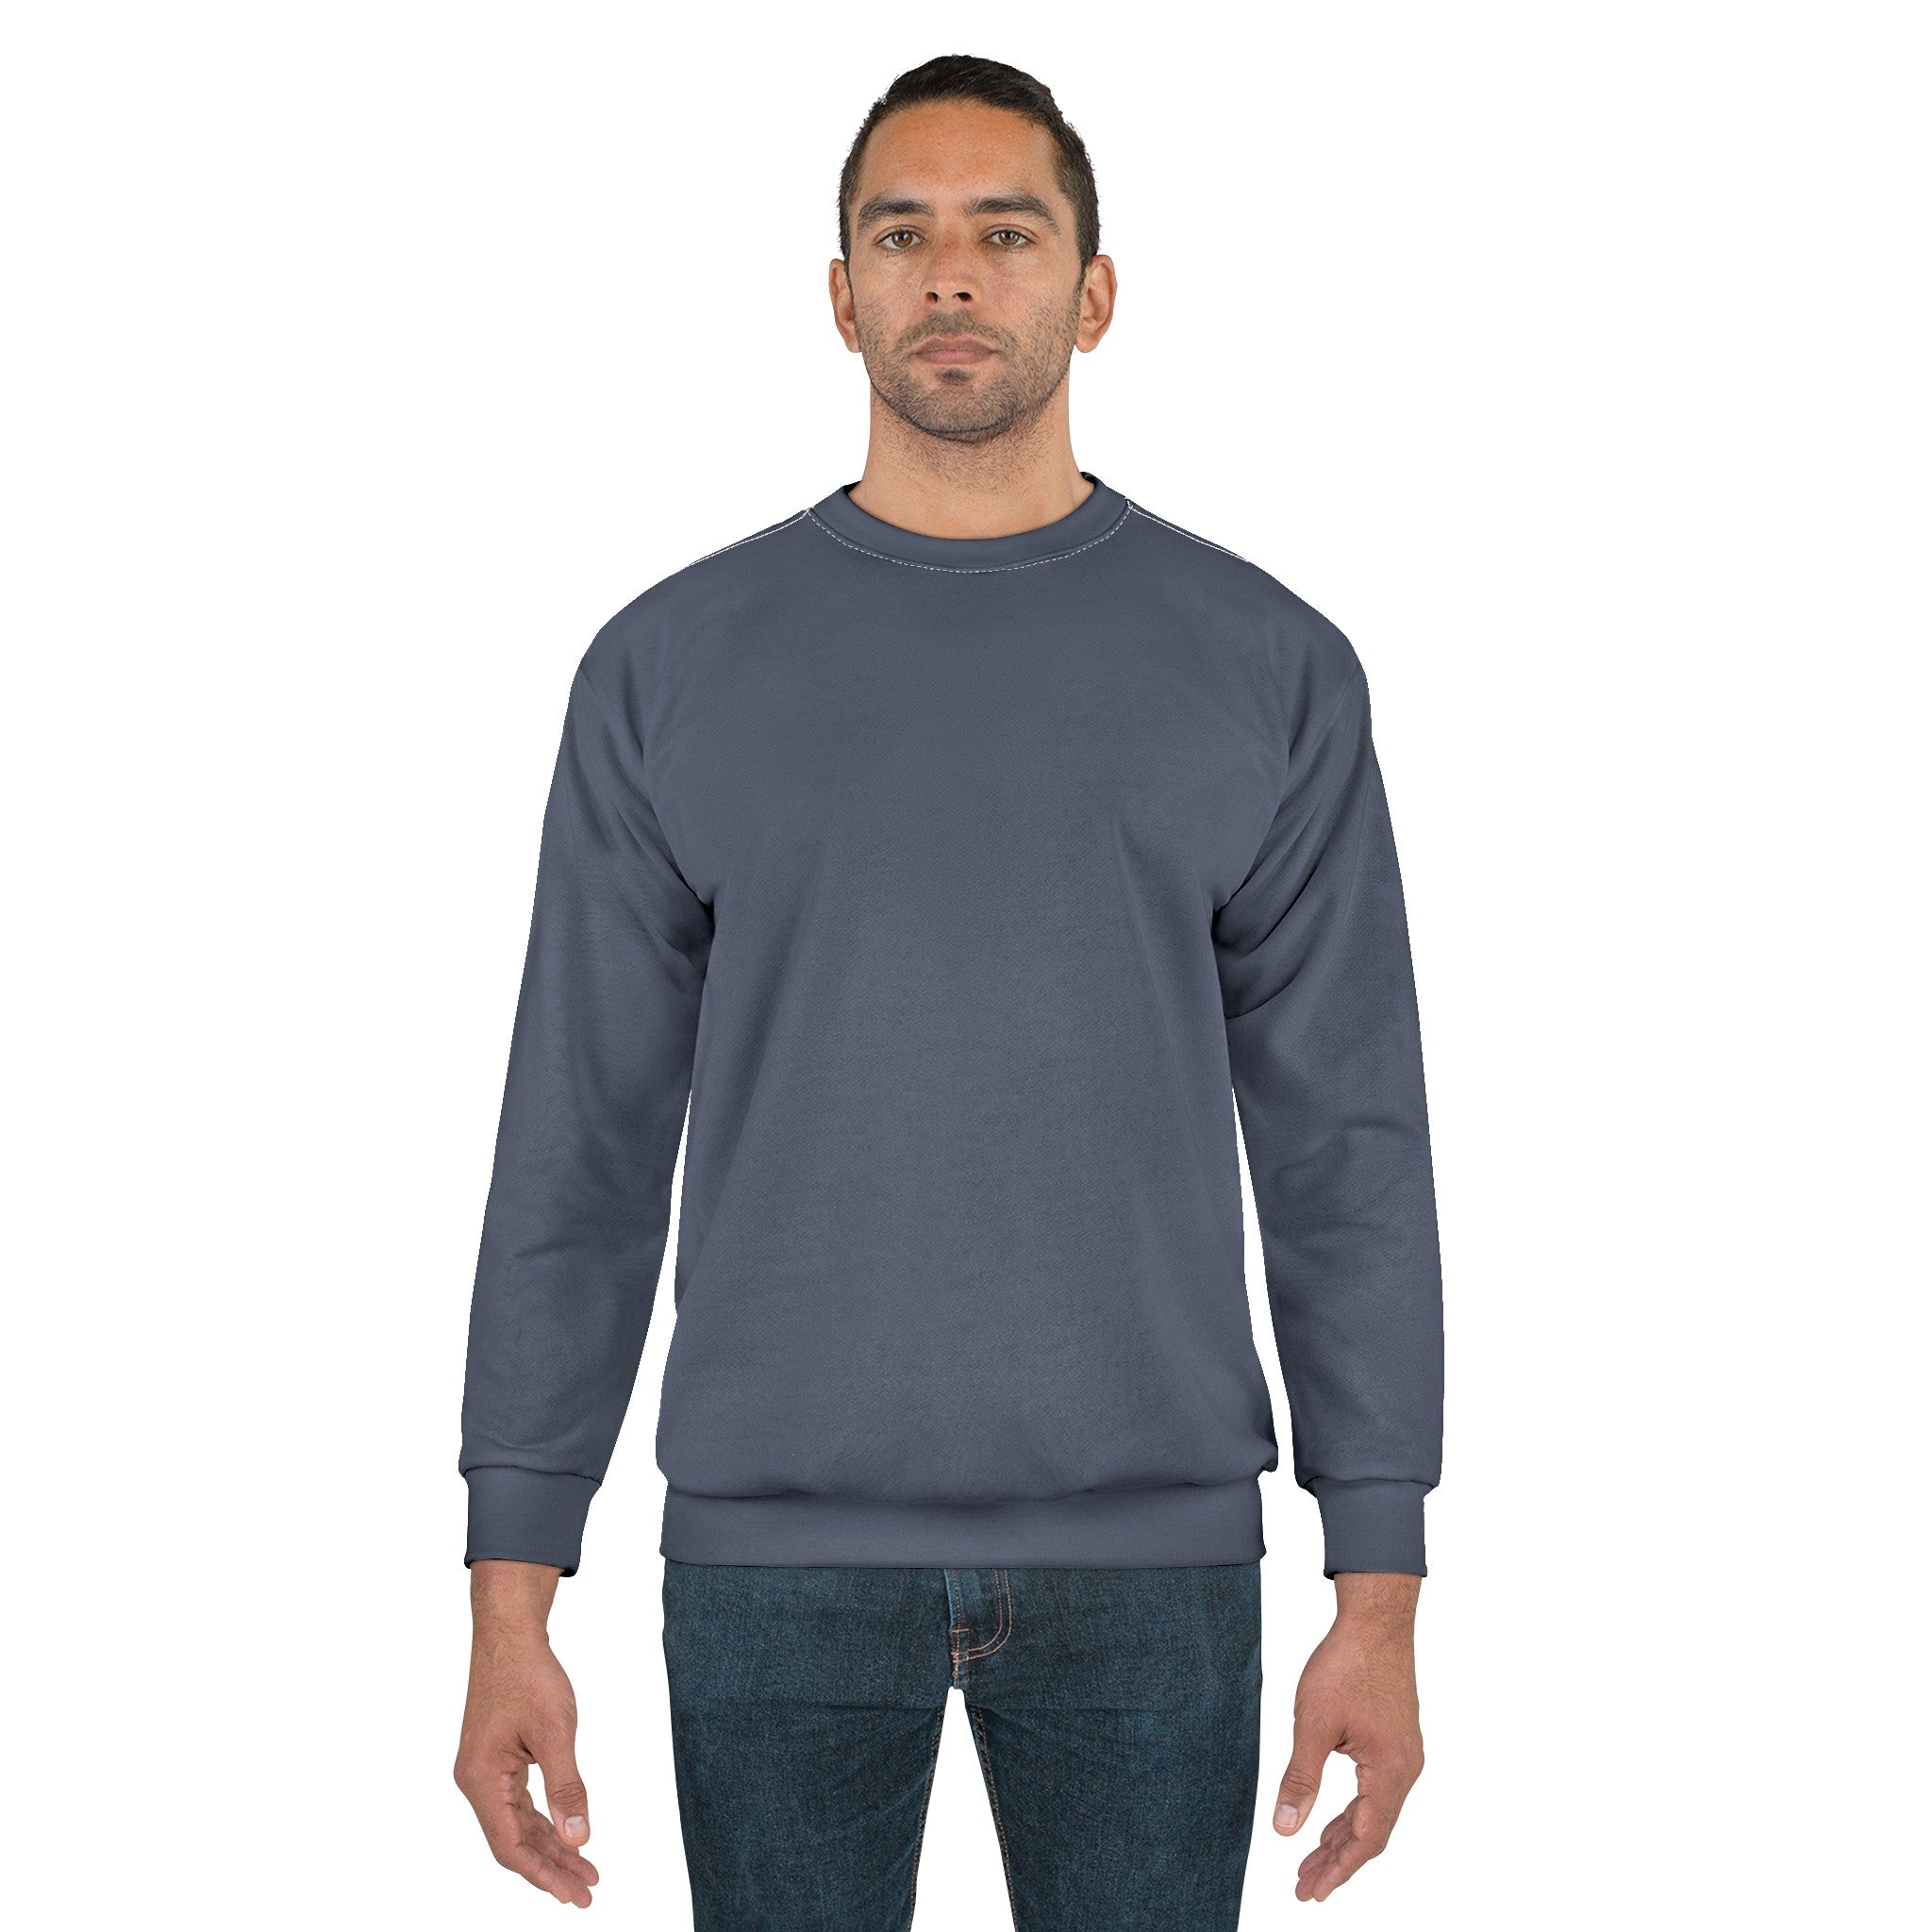 Matte Dark OLive - Unisex Sweatshirt